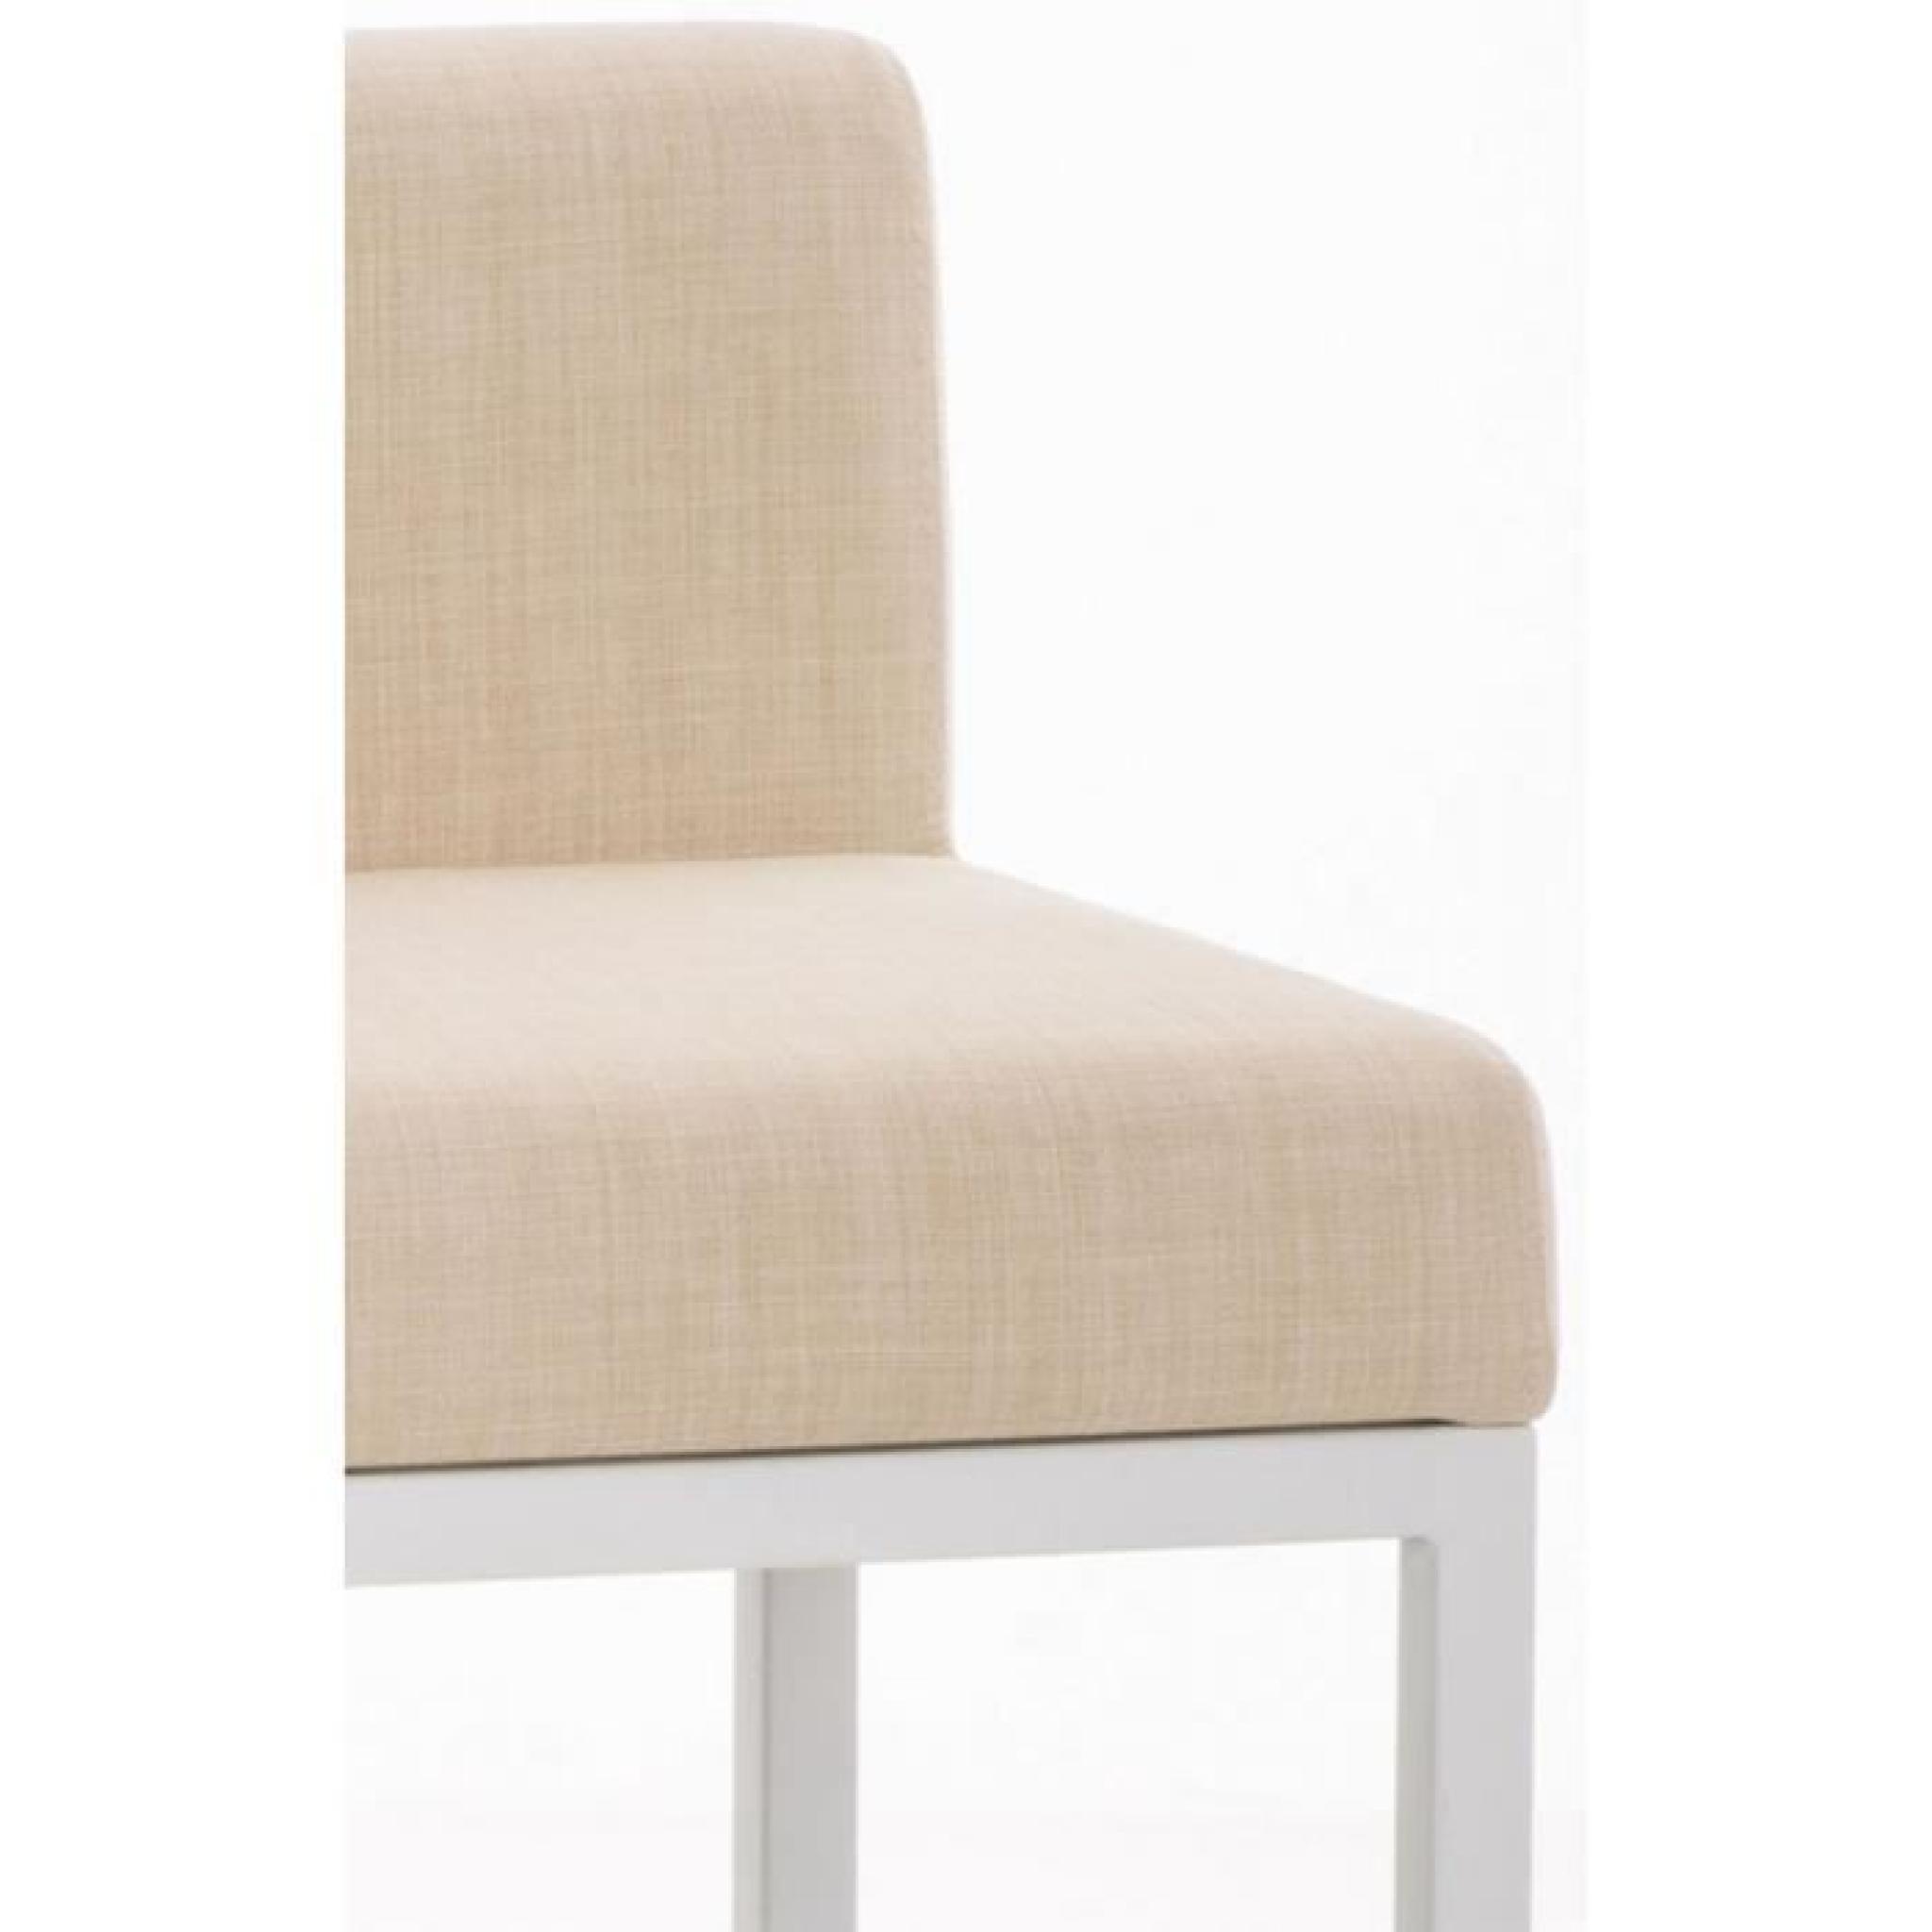 Chaise de bar en métal avec siège en tissu coloris crème, H 96,5 x L 40 x P 44,5 cm pas cher